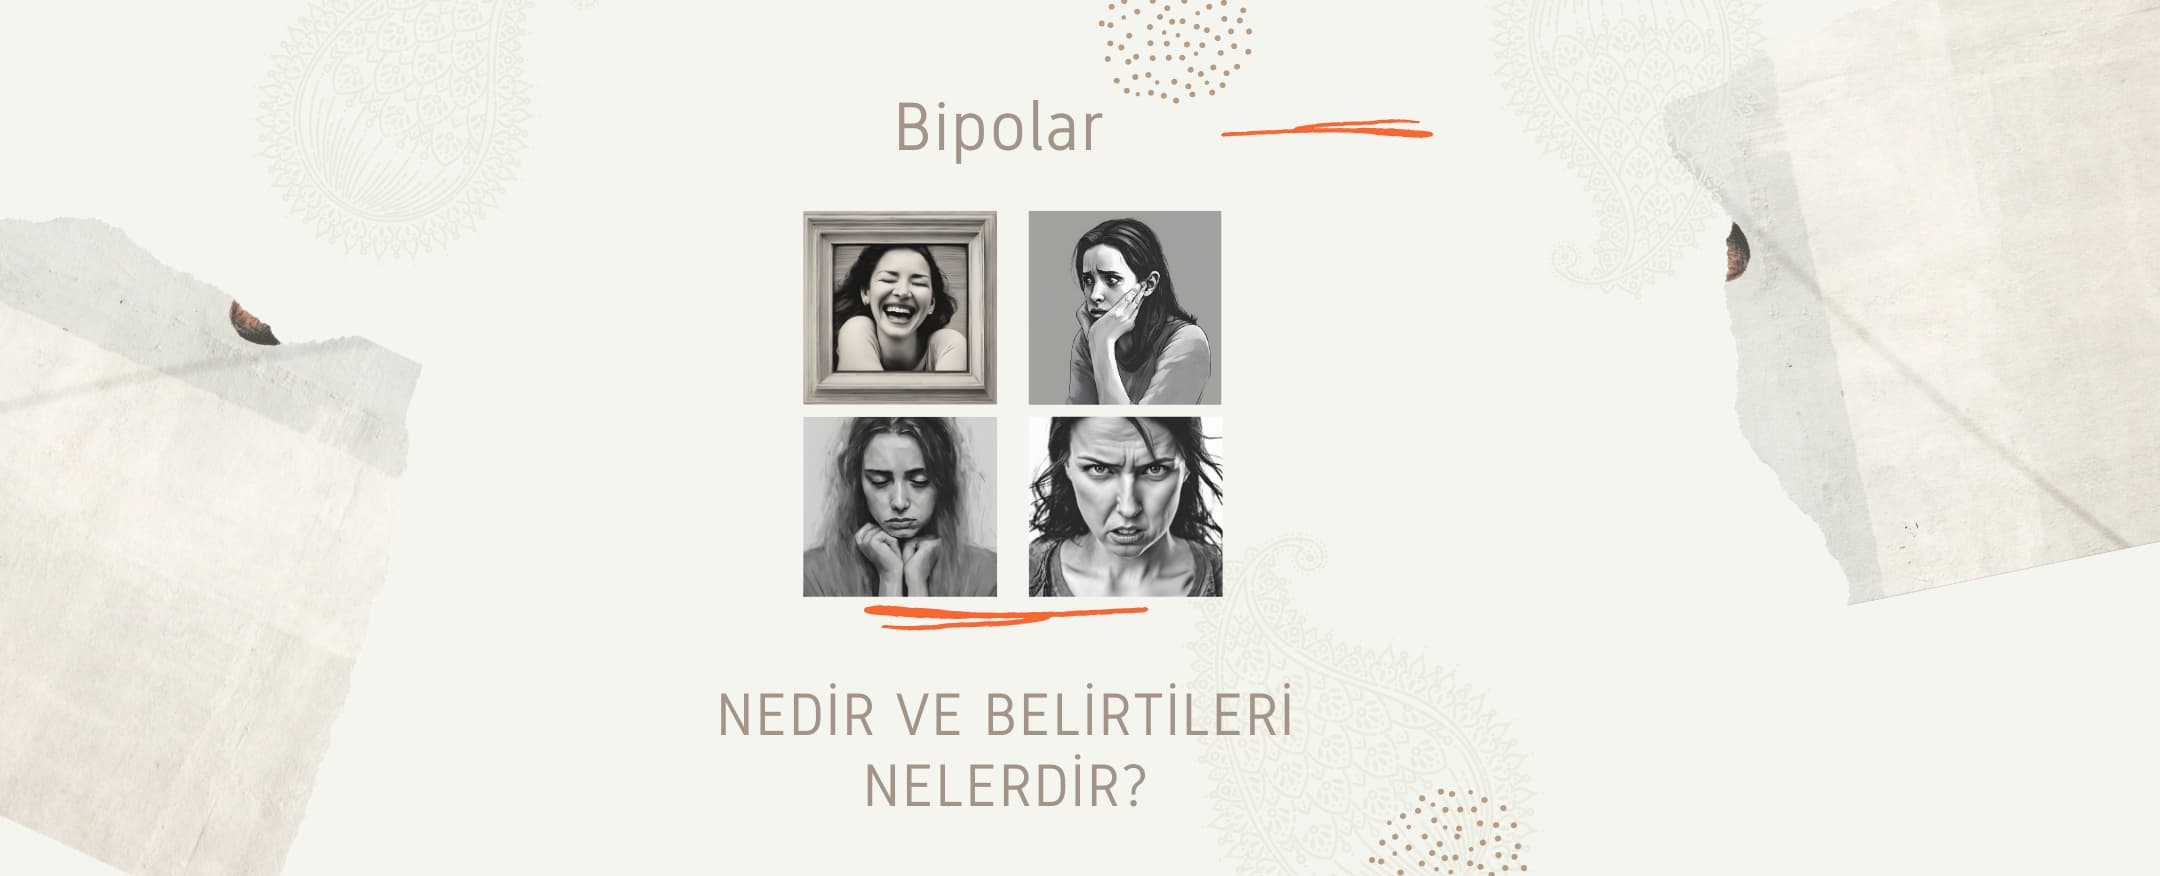 Bipolar Nedir? Bipolar Belirtileri Nelerdir? | 2Face Psikoloji